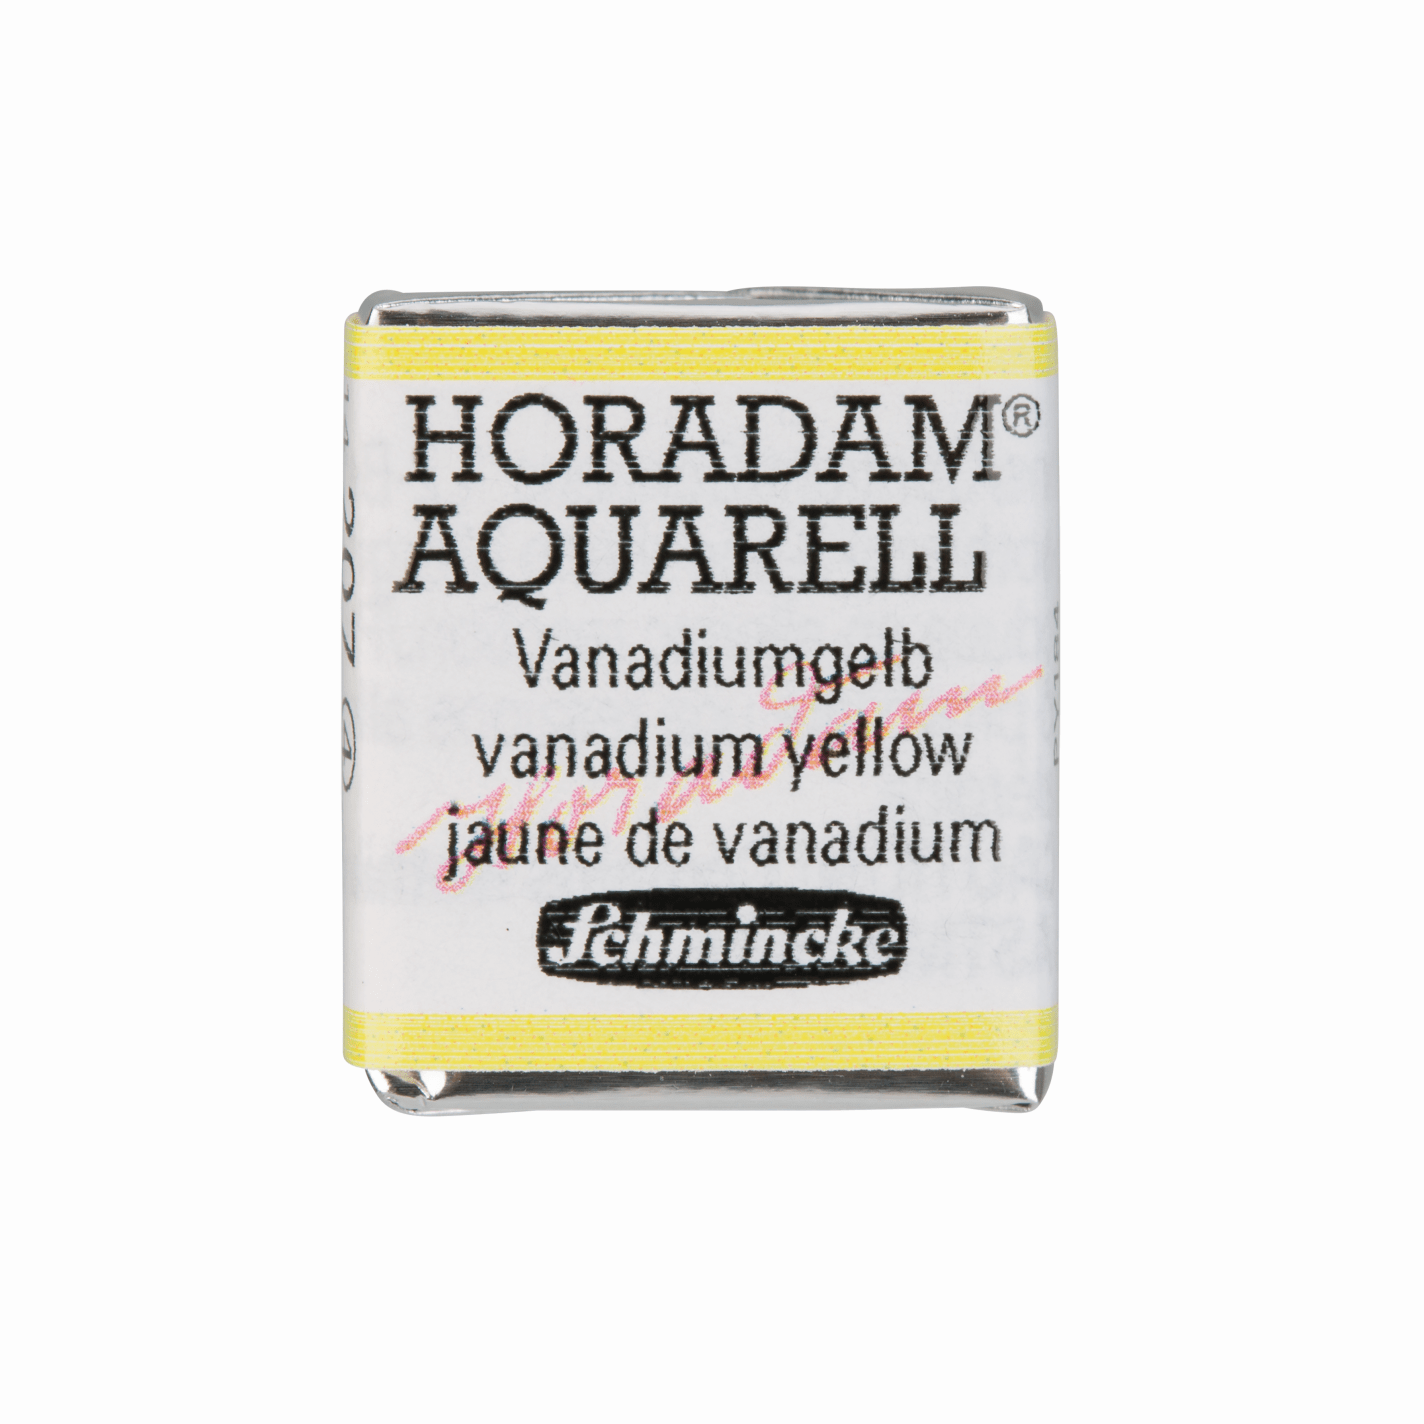 Schmincke Horadam Aquarell pans 1/2 pan Vanadium Yellow